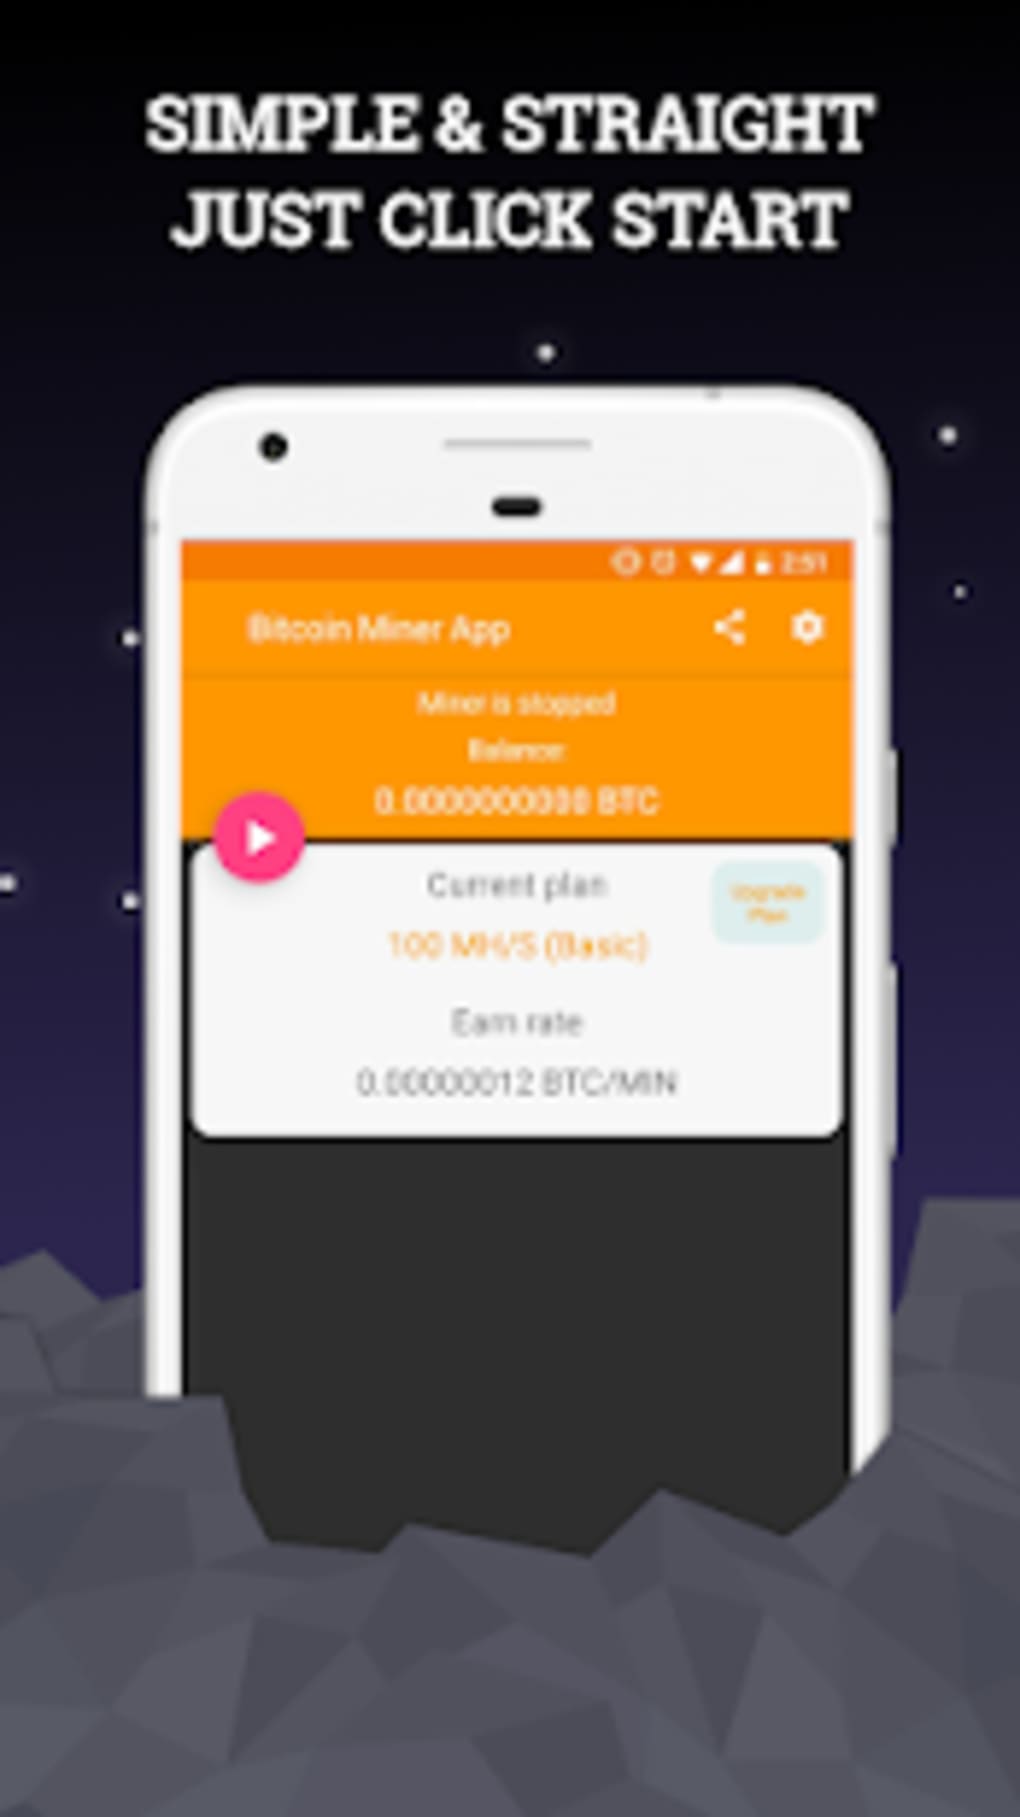 Free Bitcoin Miner Program | Bitcoin Easy To Earn